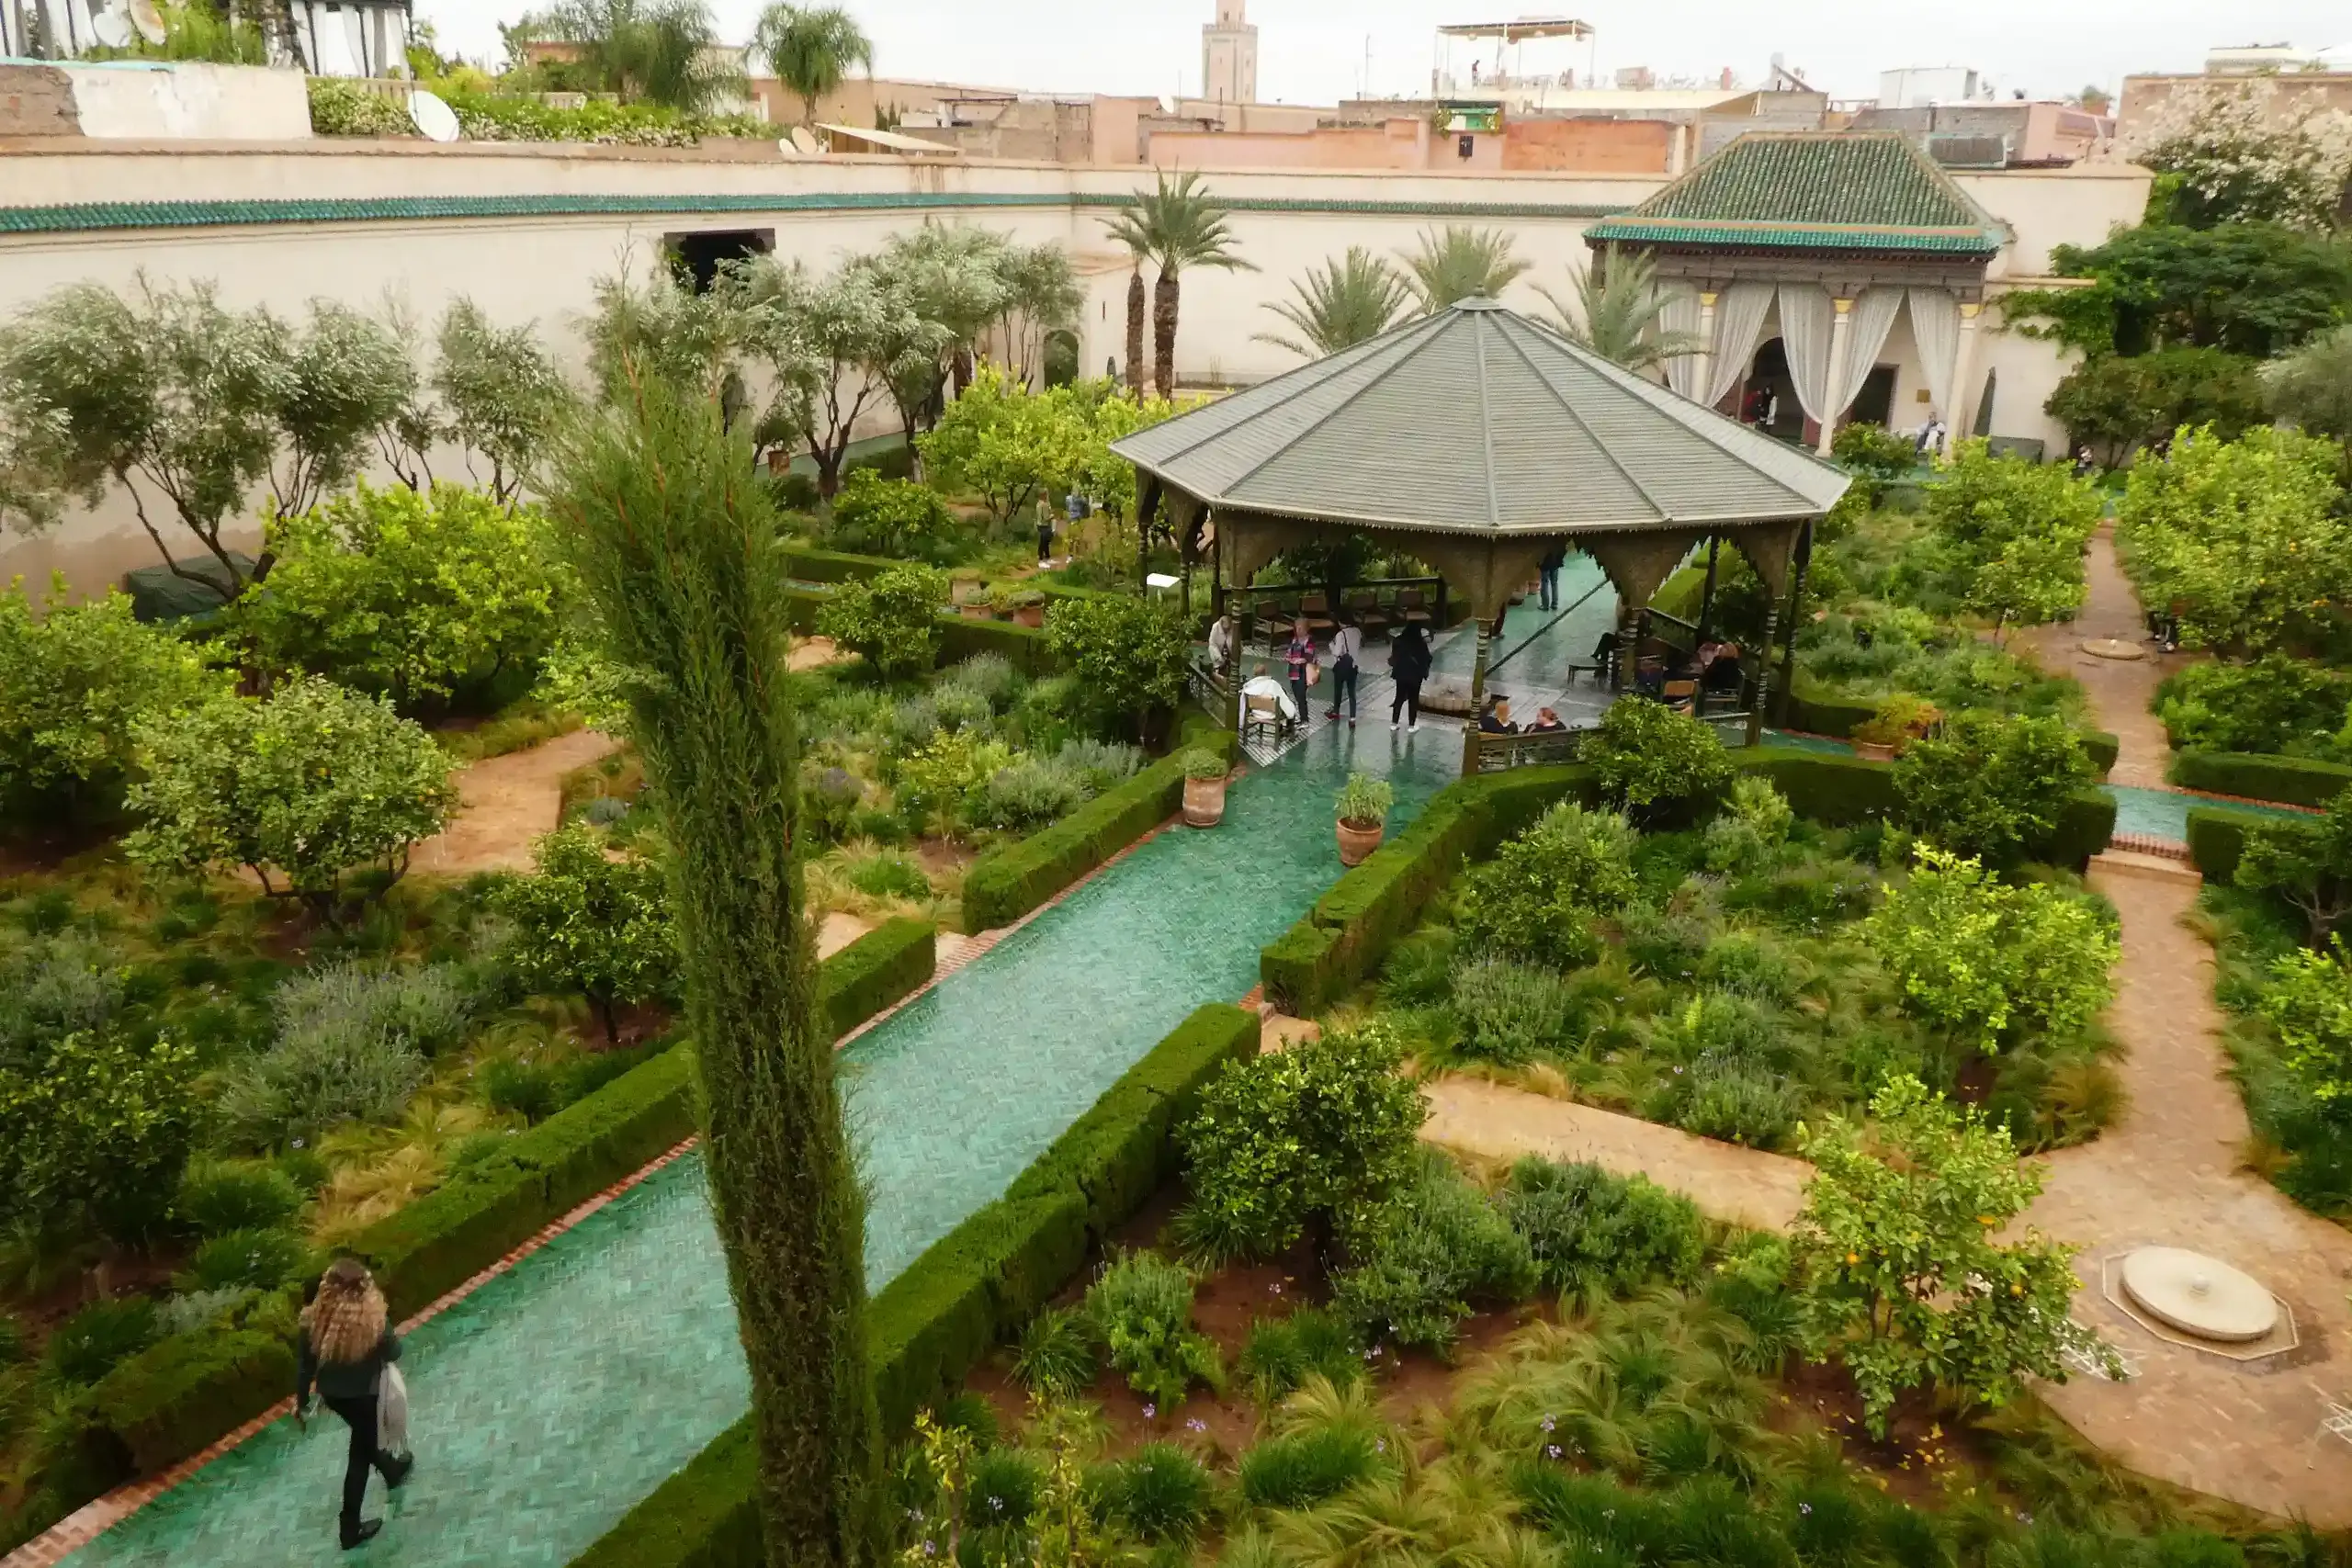 The Secret Garden of Marrakech, just a ten-minute walk from our guesthouse.